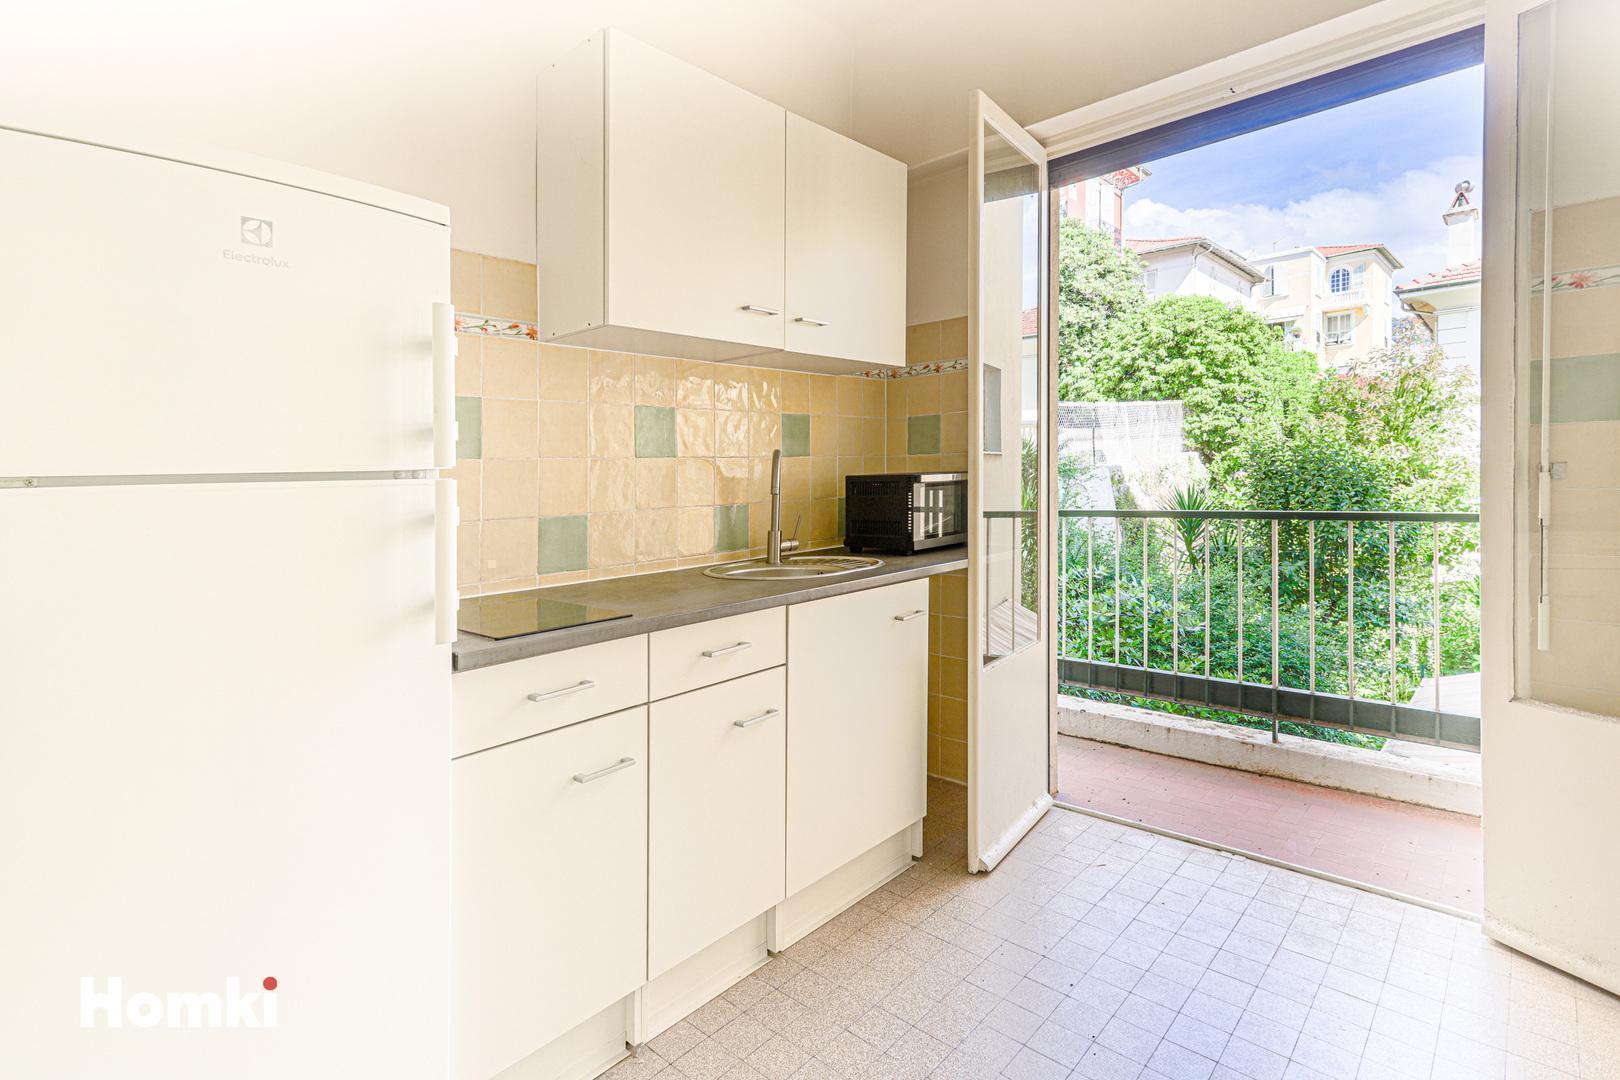 Homki - Vente Appartement  de 51.2 m² à Nice 06100